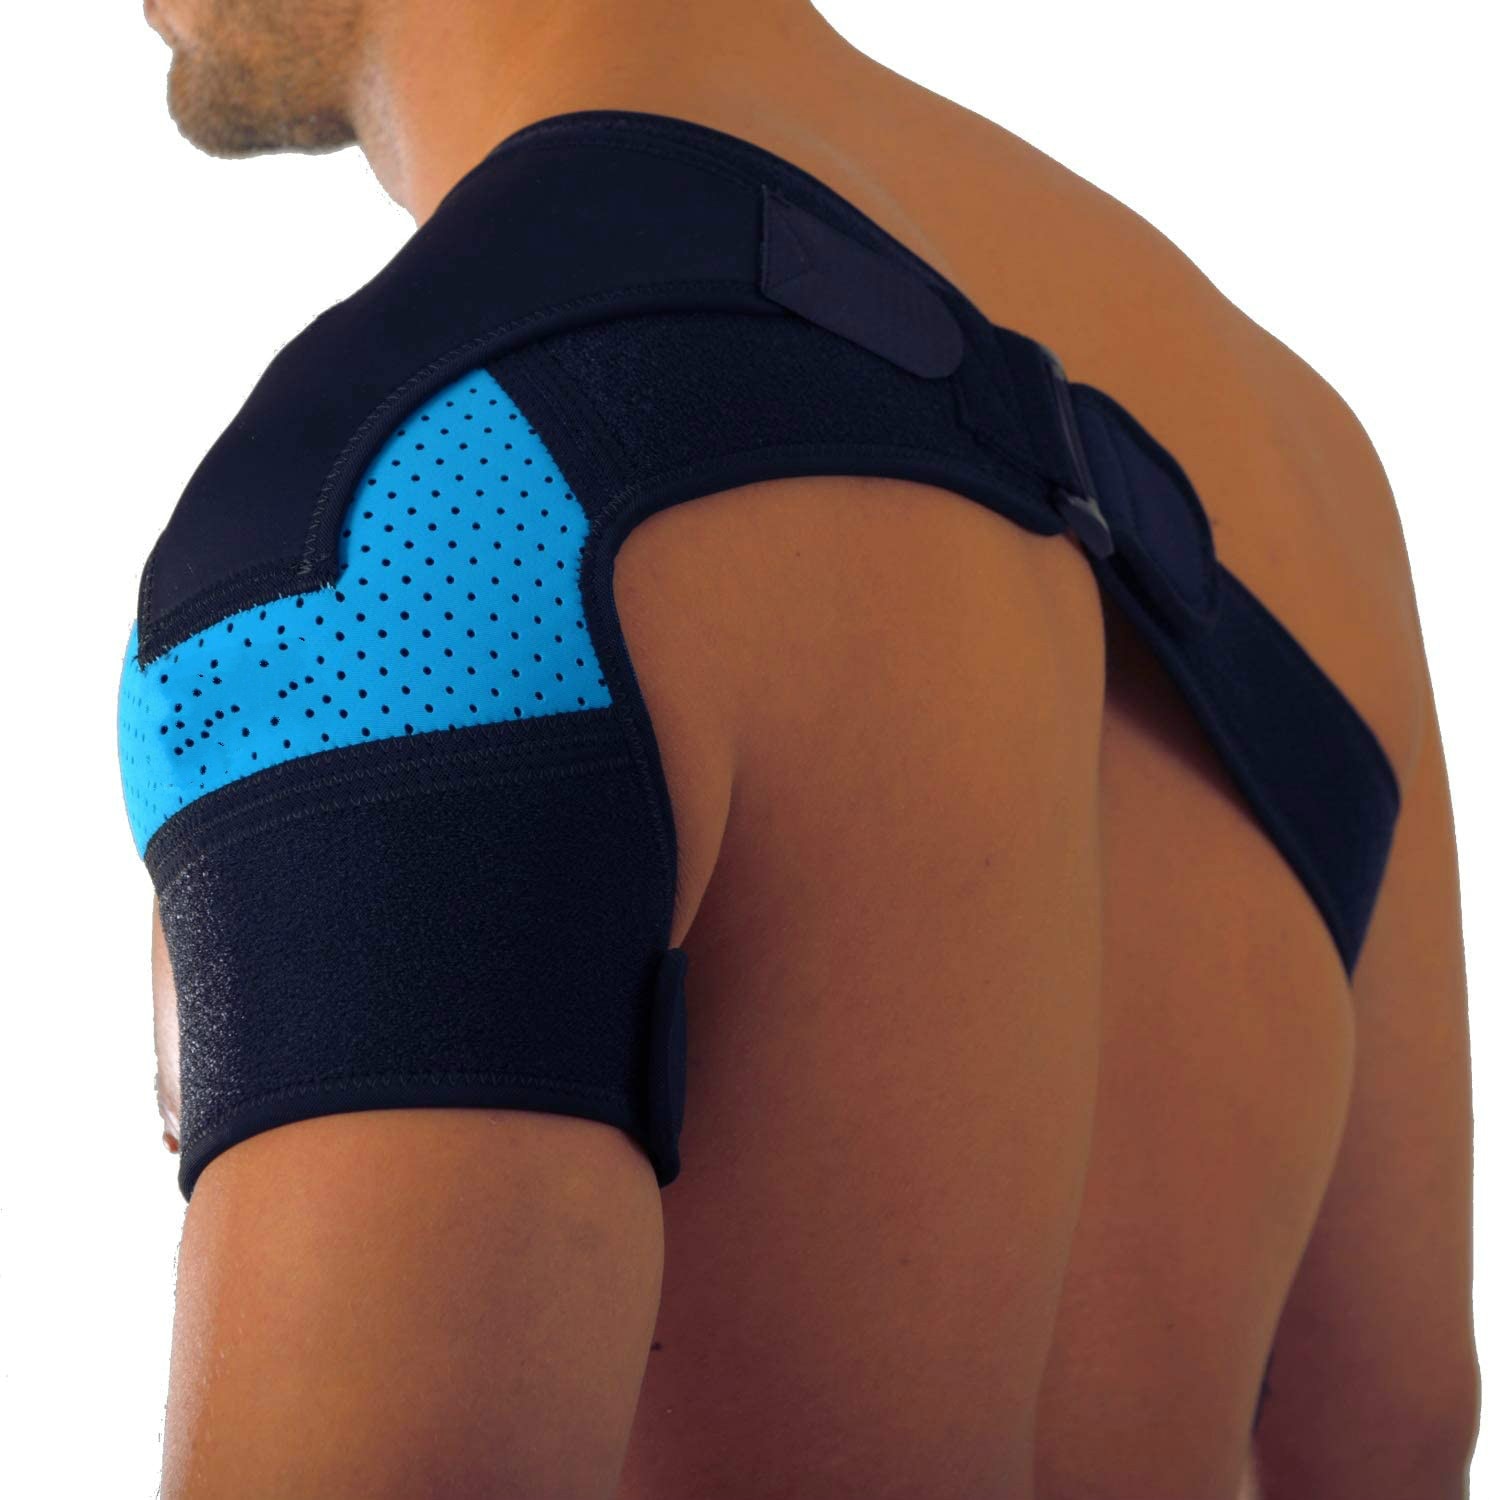 Shoulder Brace with Pressure Pad  Neoprene Shoulder Support Shoulder Pain Ice Pack Shoulder Compression Sleeve